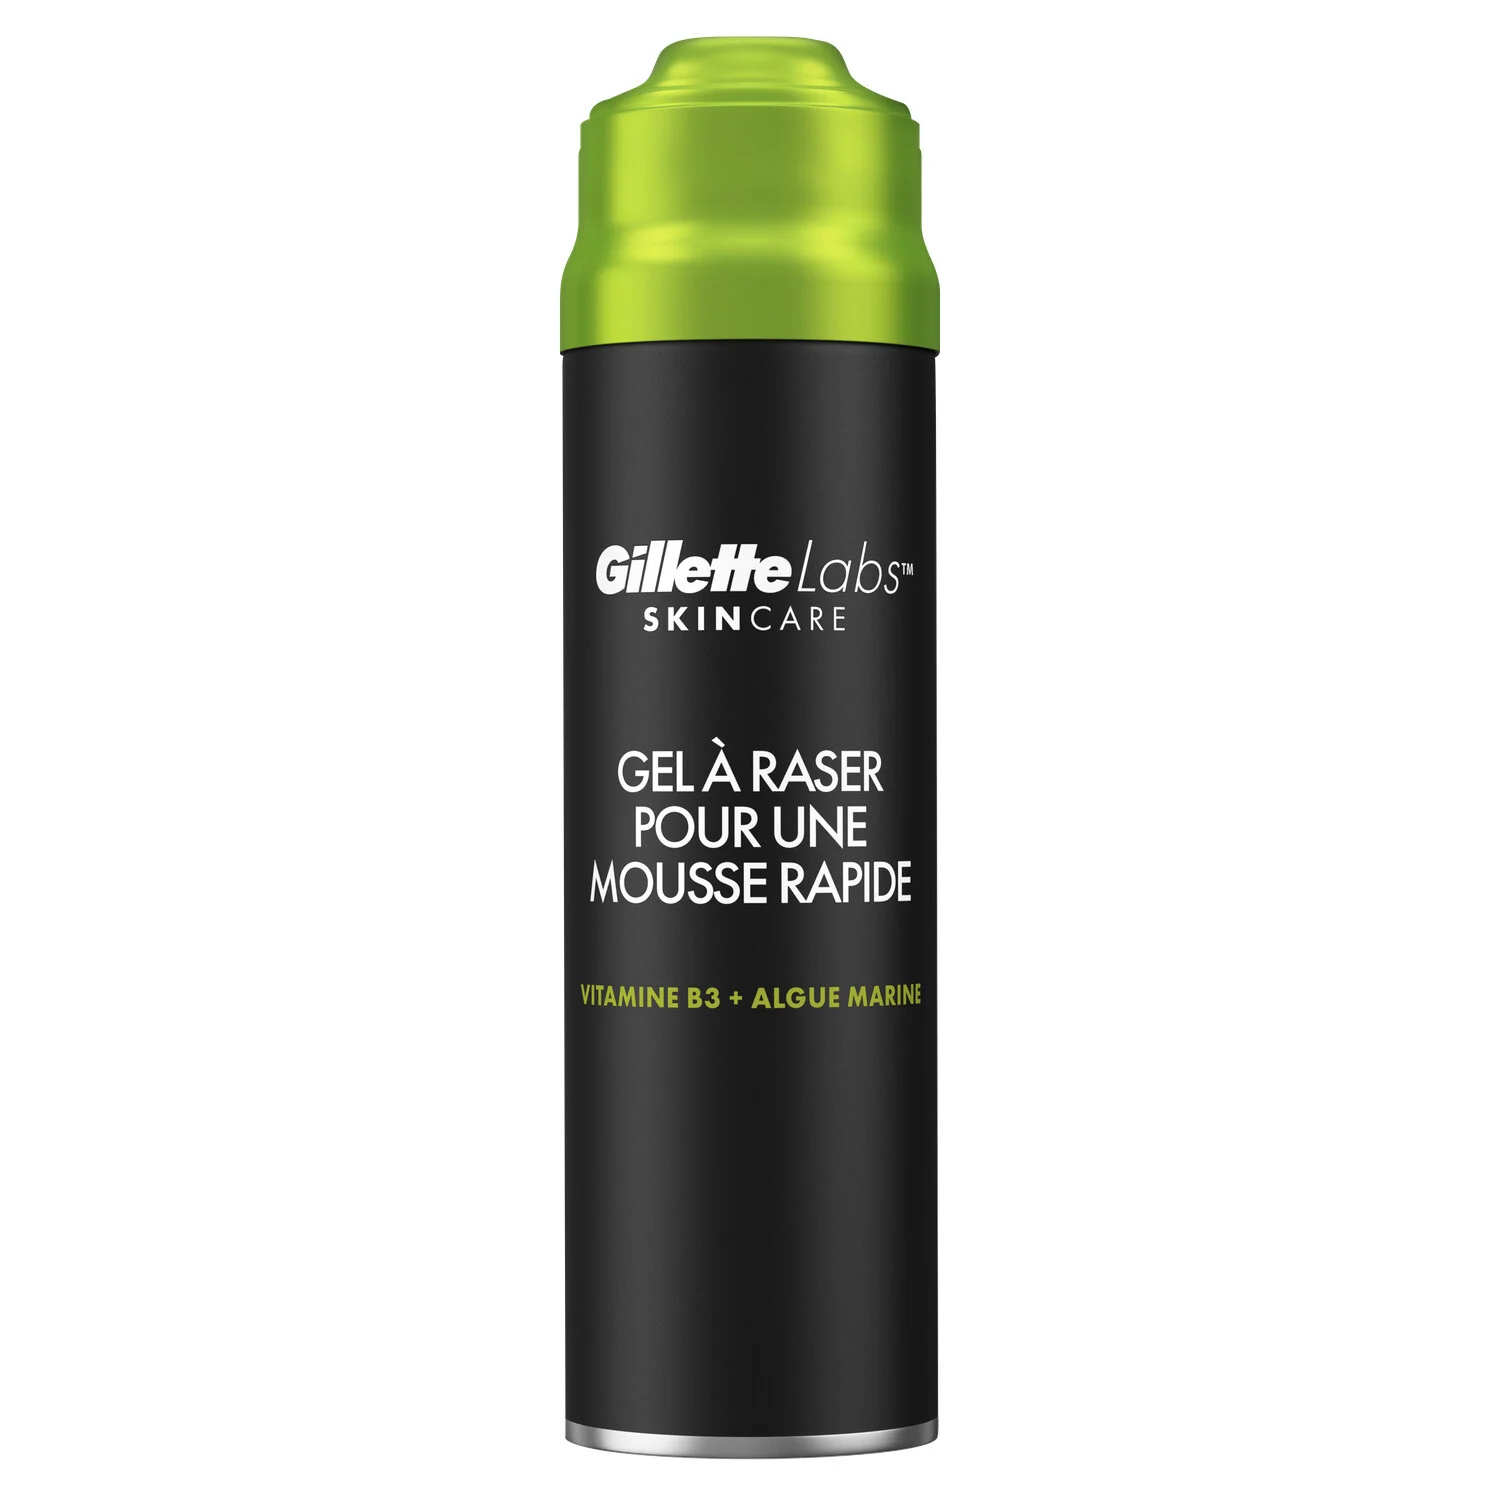 Gar Gillette Labs, 198 ml